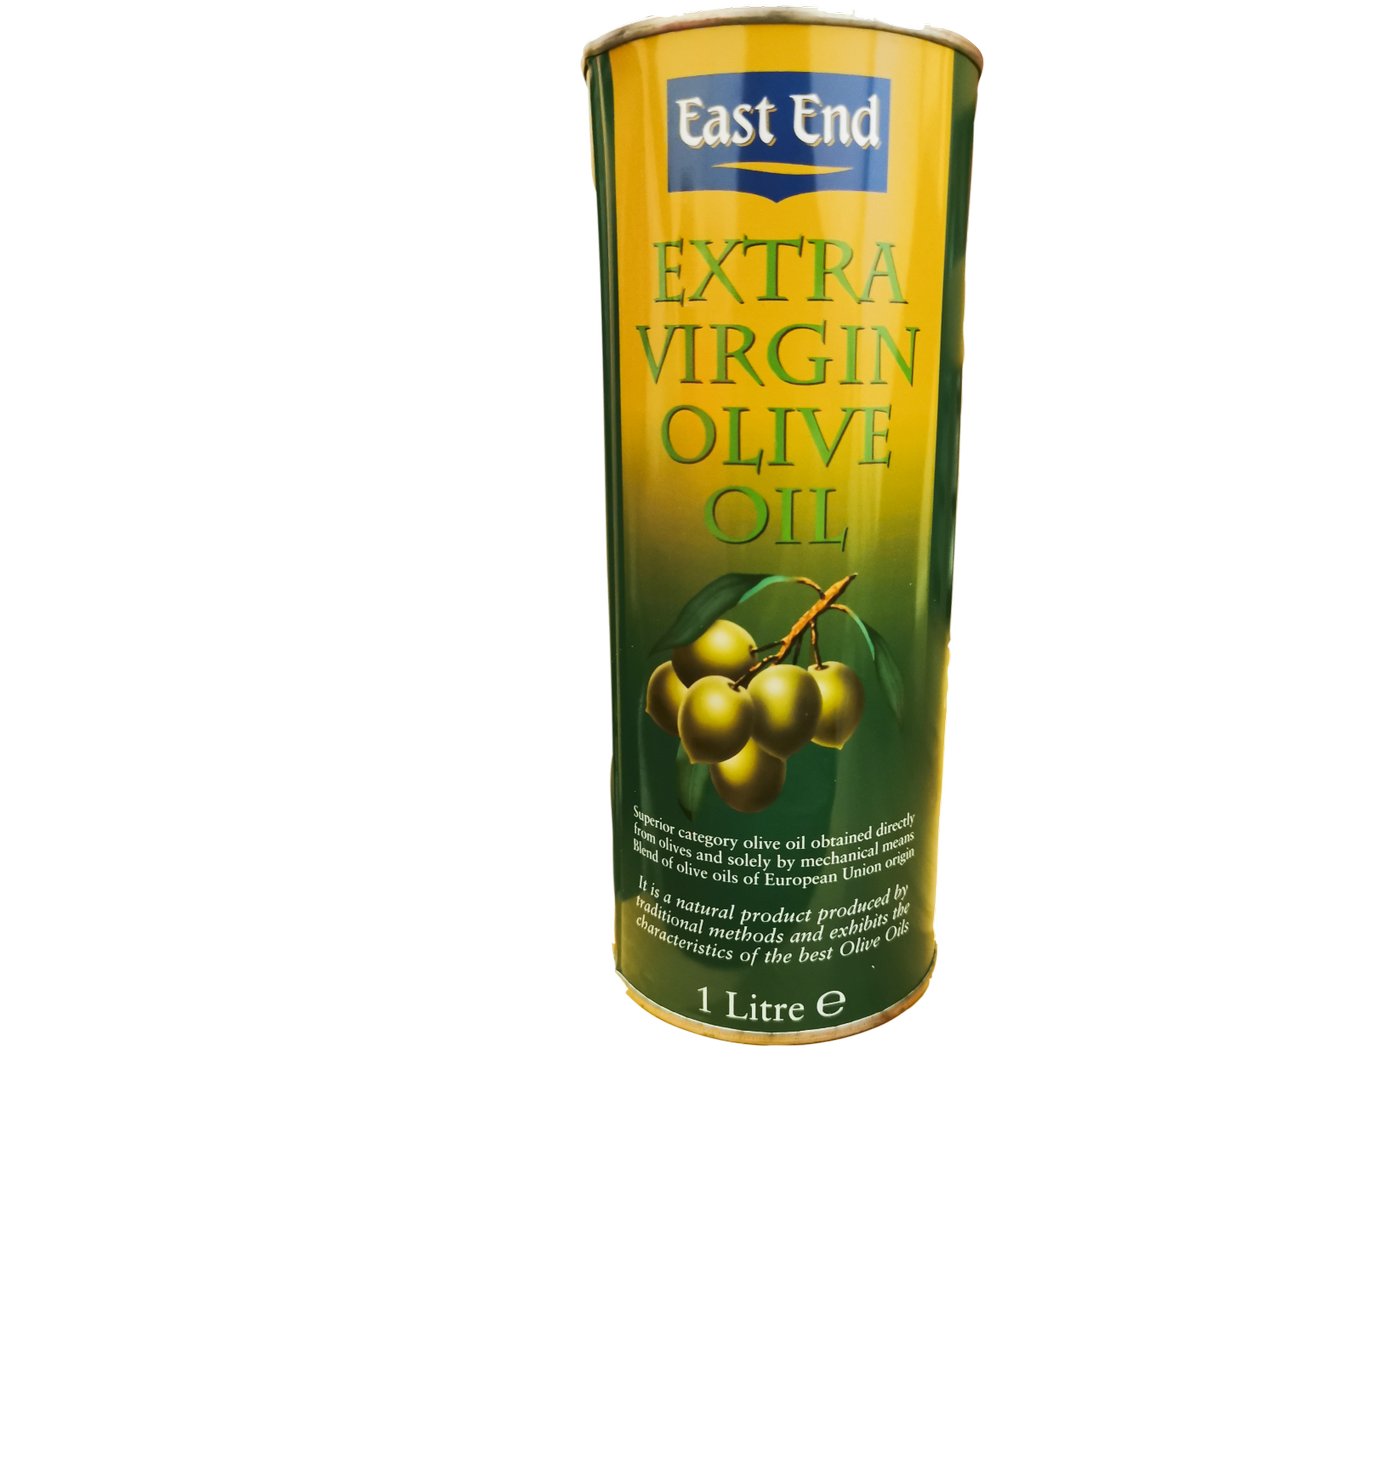 East End Extra Virgin Olive Oil